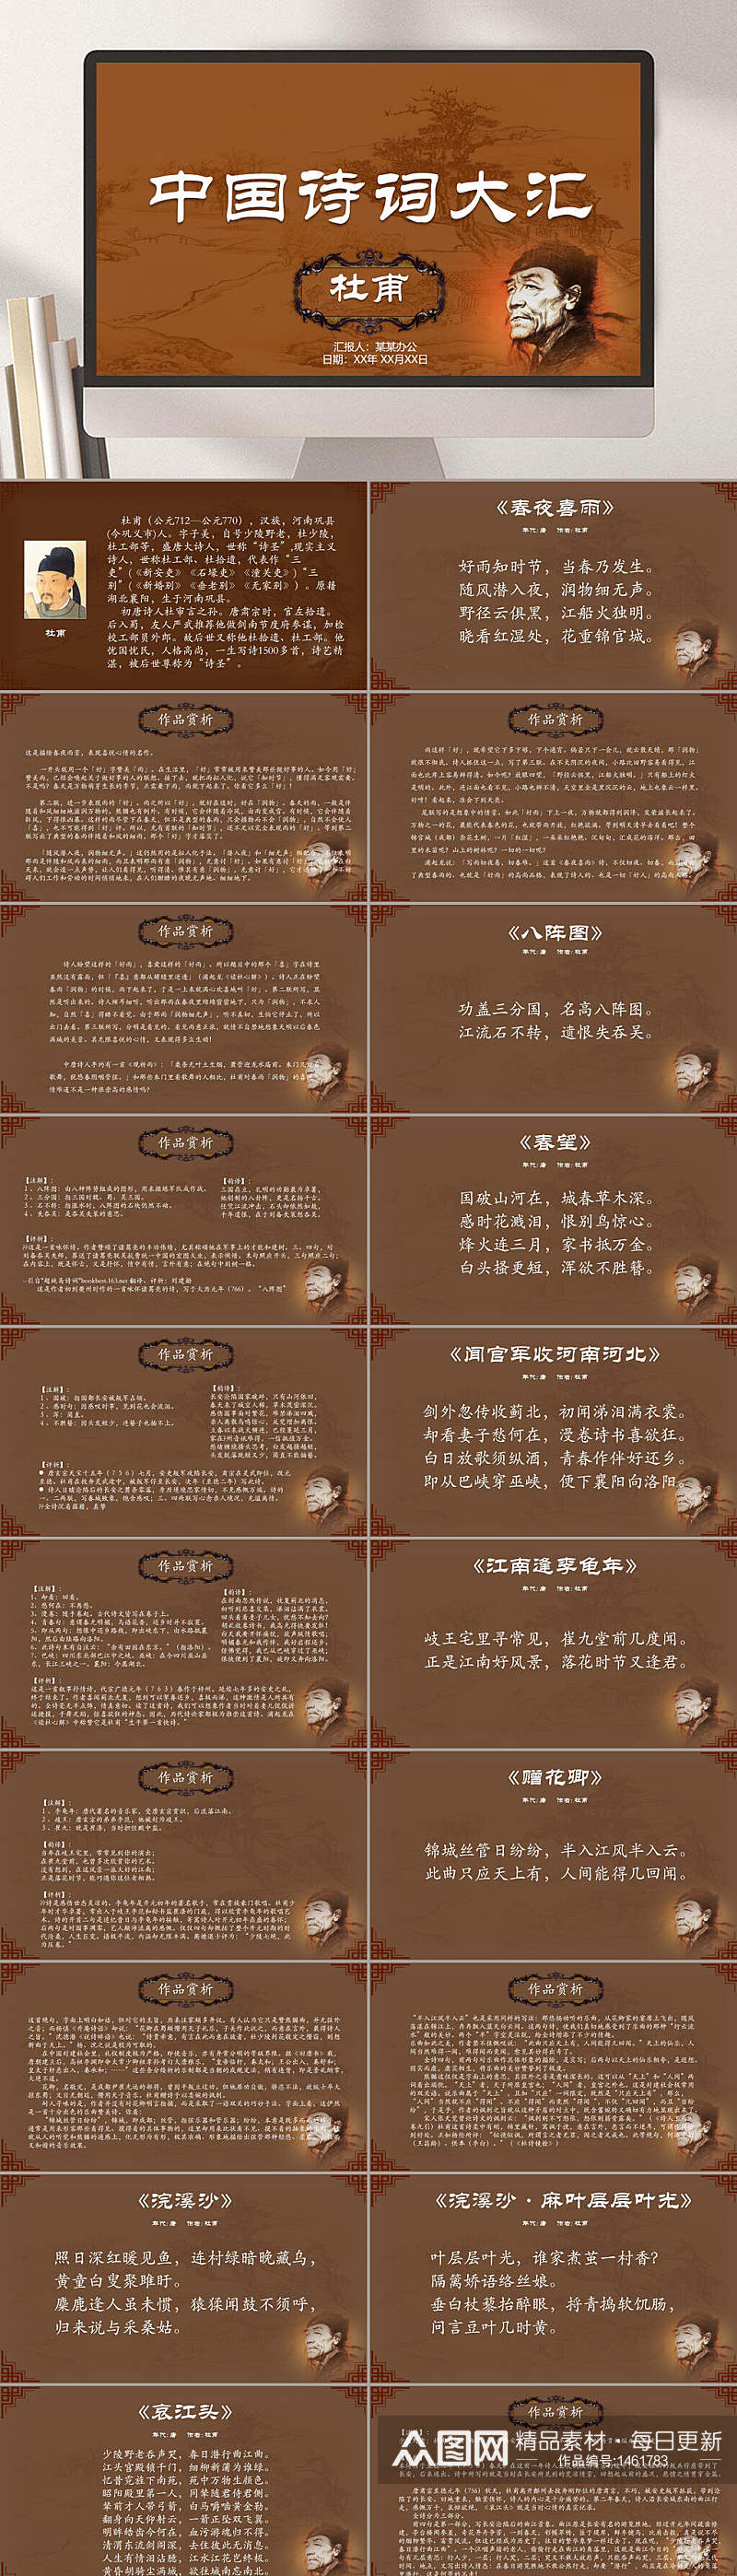 诗歌朗诵中国风诗歌模板PPT素材